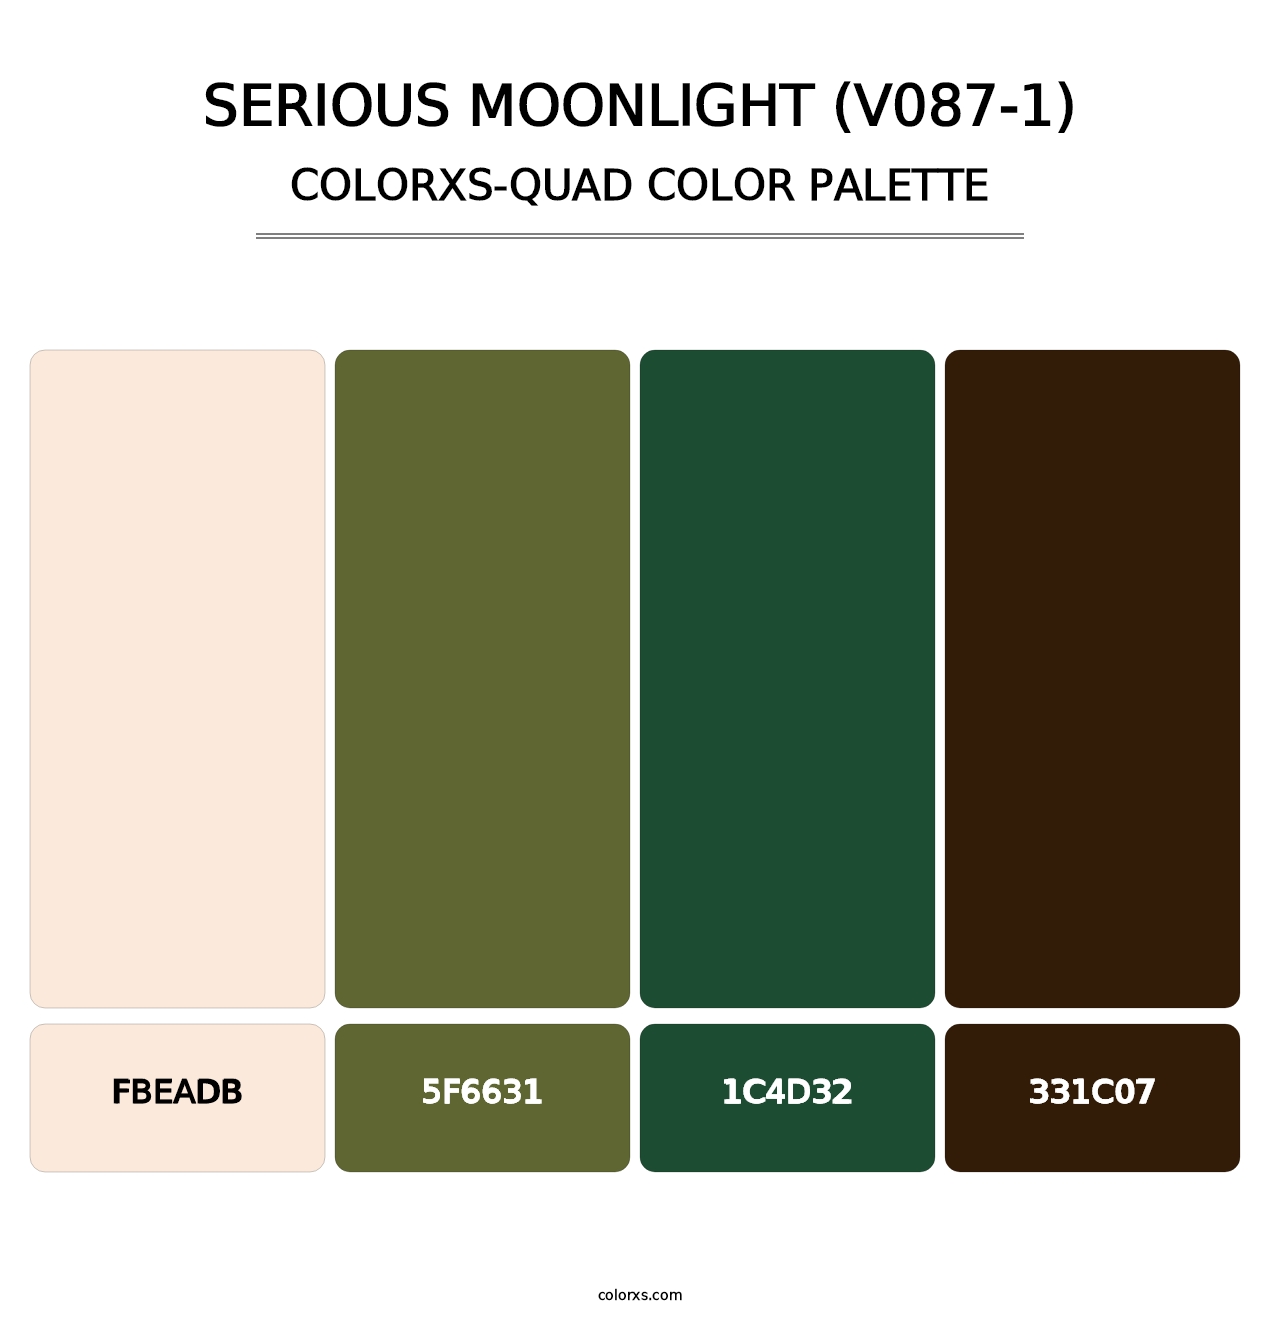 Serious Moonlight (V087-1) - Colorxs Quad Palette